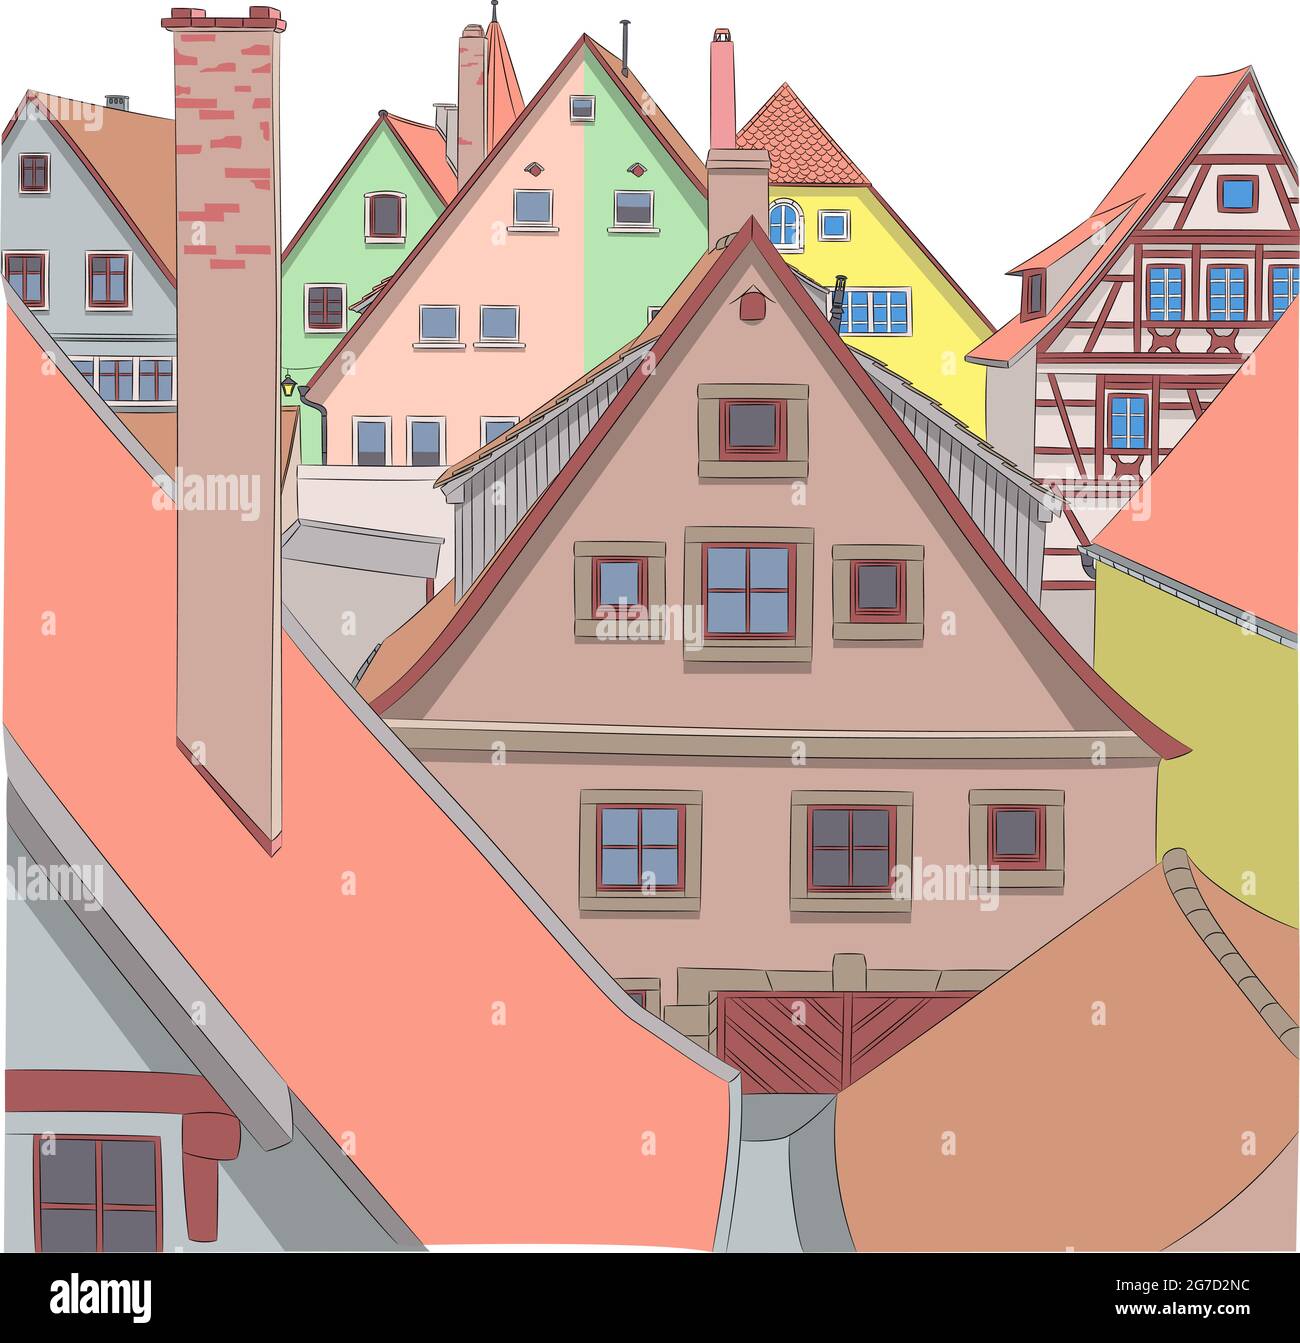 Façades colorées de maisons médiévales anciennes de Rothenburg ob der Tauber. Allemagne. Bavière Illustration de Vecteur